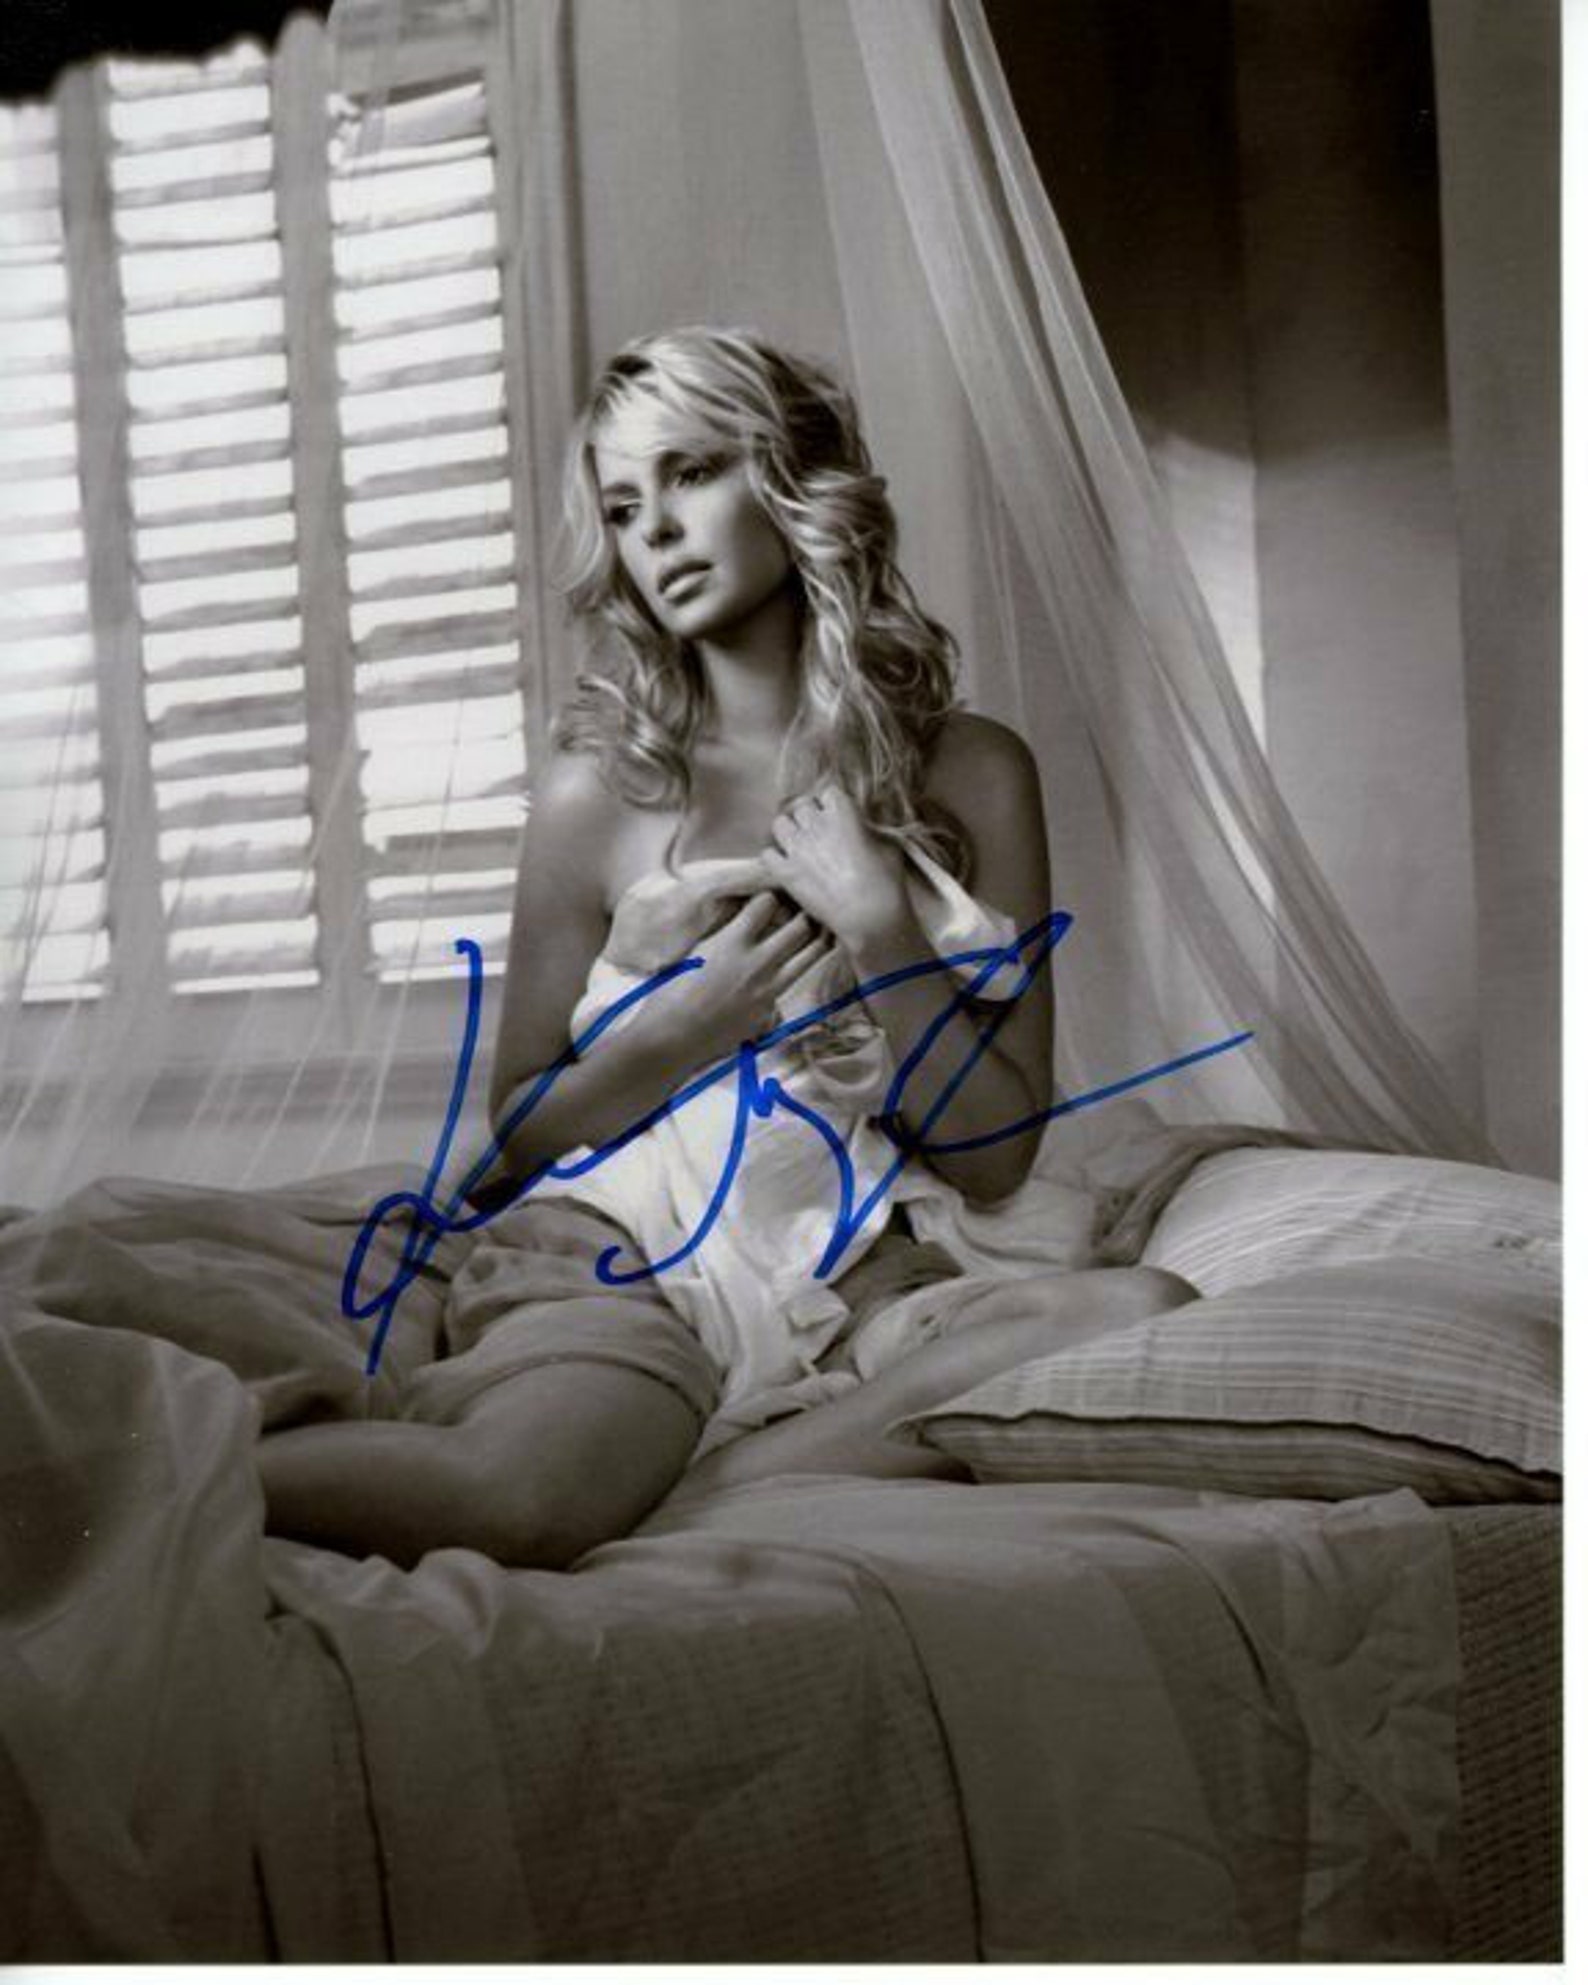 Katherine Heigl Signed Autographed 8x10 Photo Etsy 